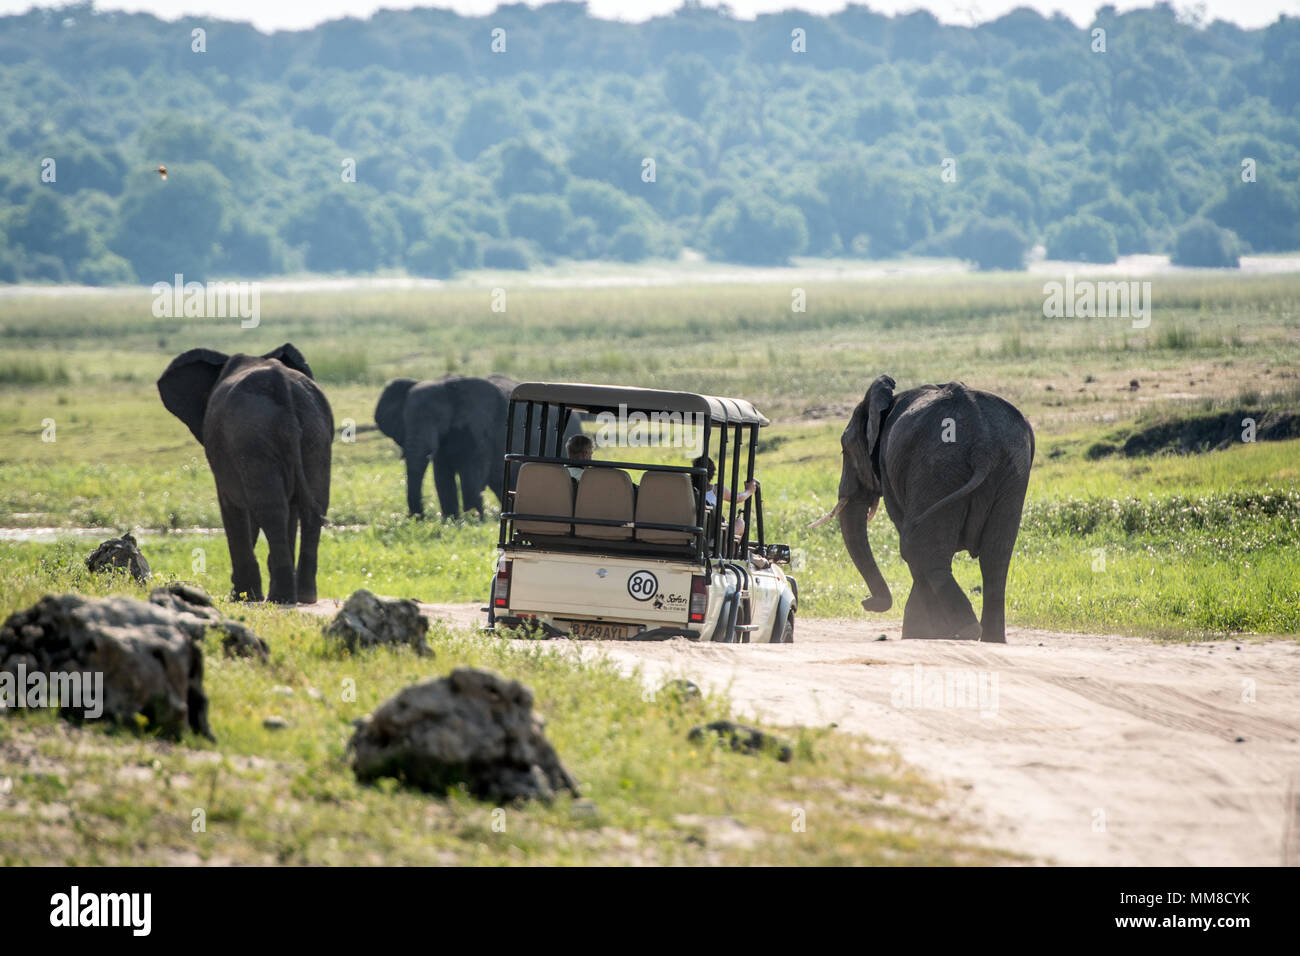 Spiel viewer Fahrzeug navigiert unebenem Gelände während der Fahrt neben einer kleinen Gruppe von afrikanischen Busch Elefanten (Loxodonta africana), Chobe Nationalpark - Stockfoto